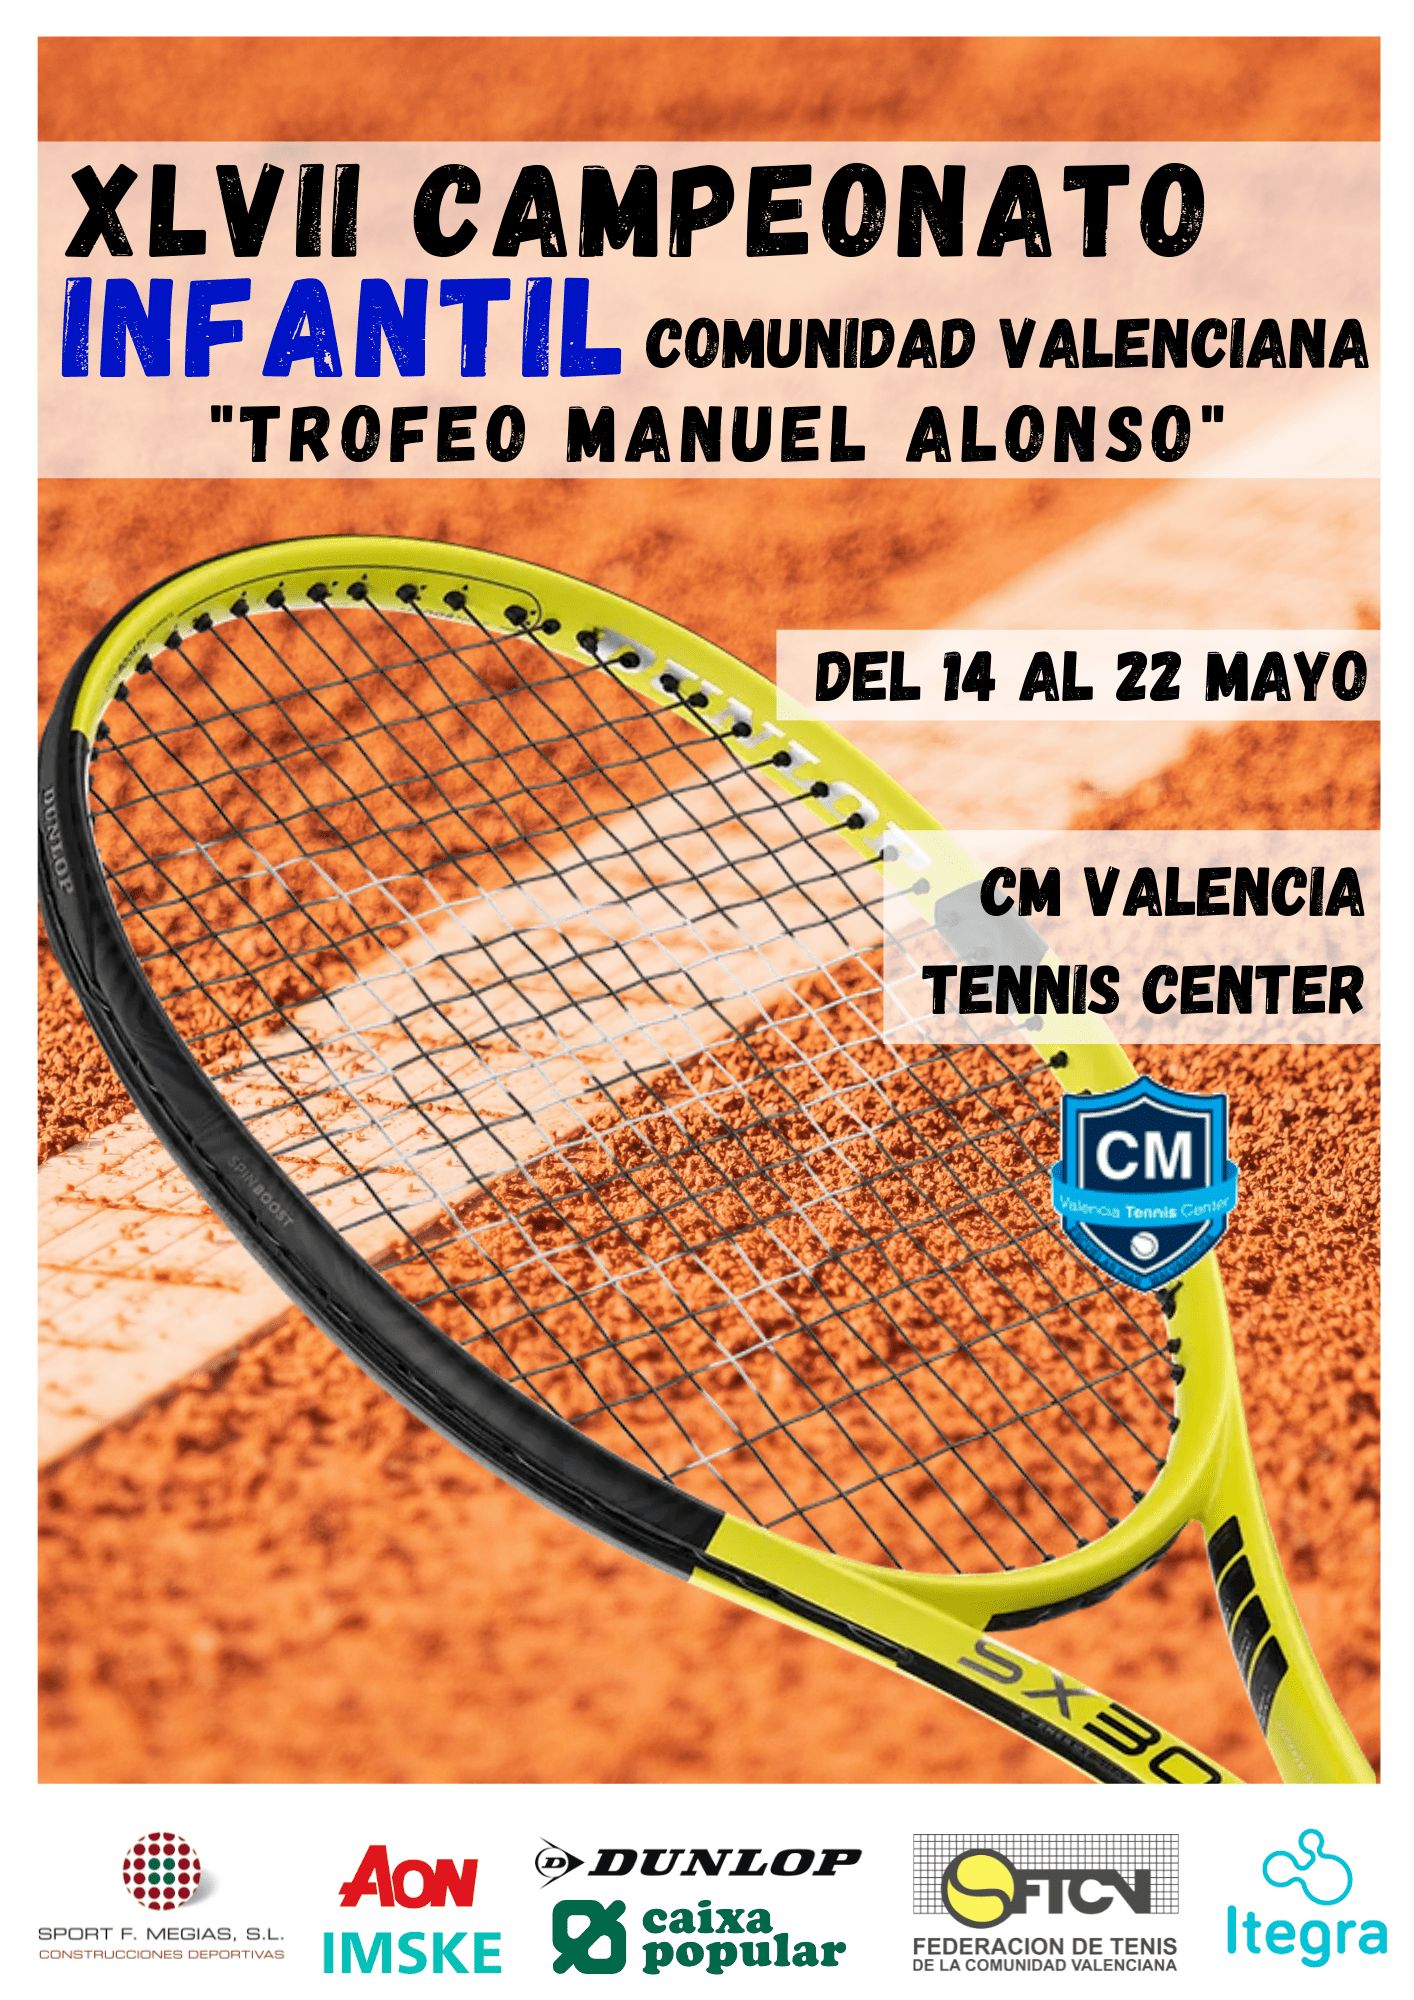 XLVII Campeonato Infantil Manuel Alonso 1